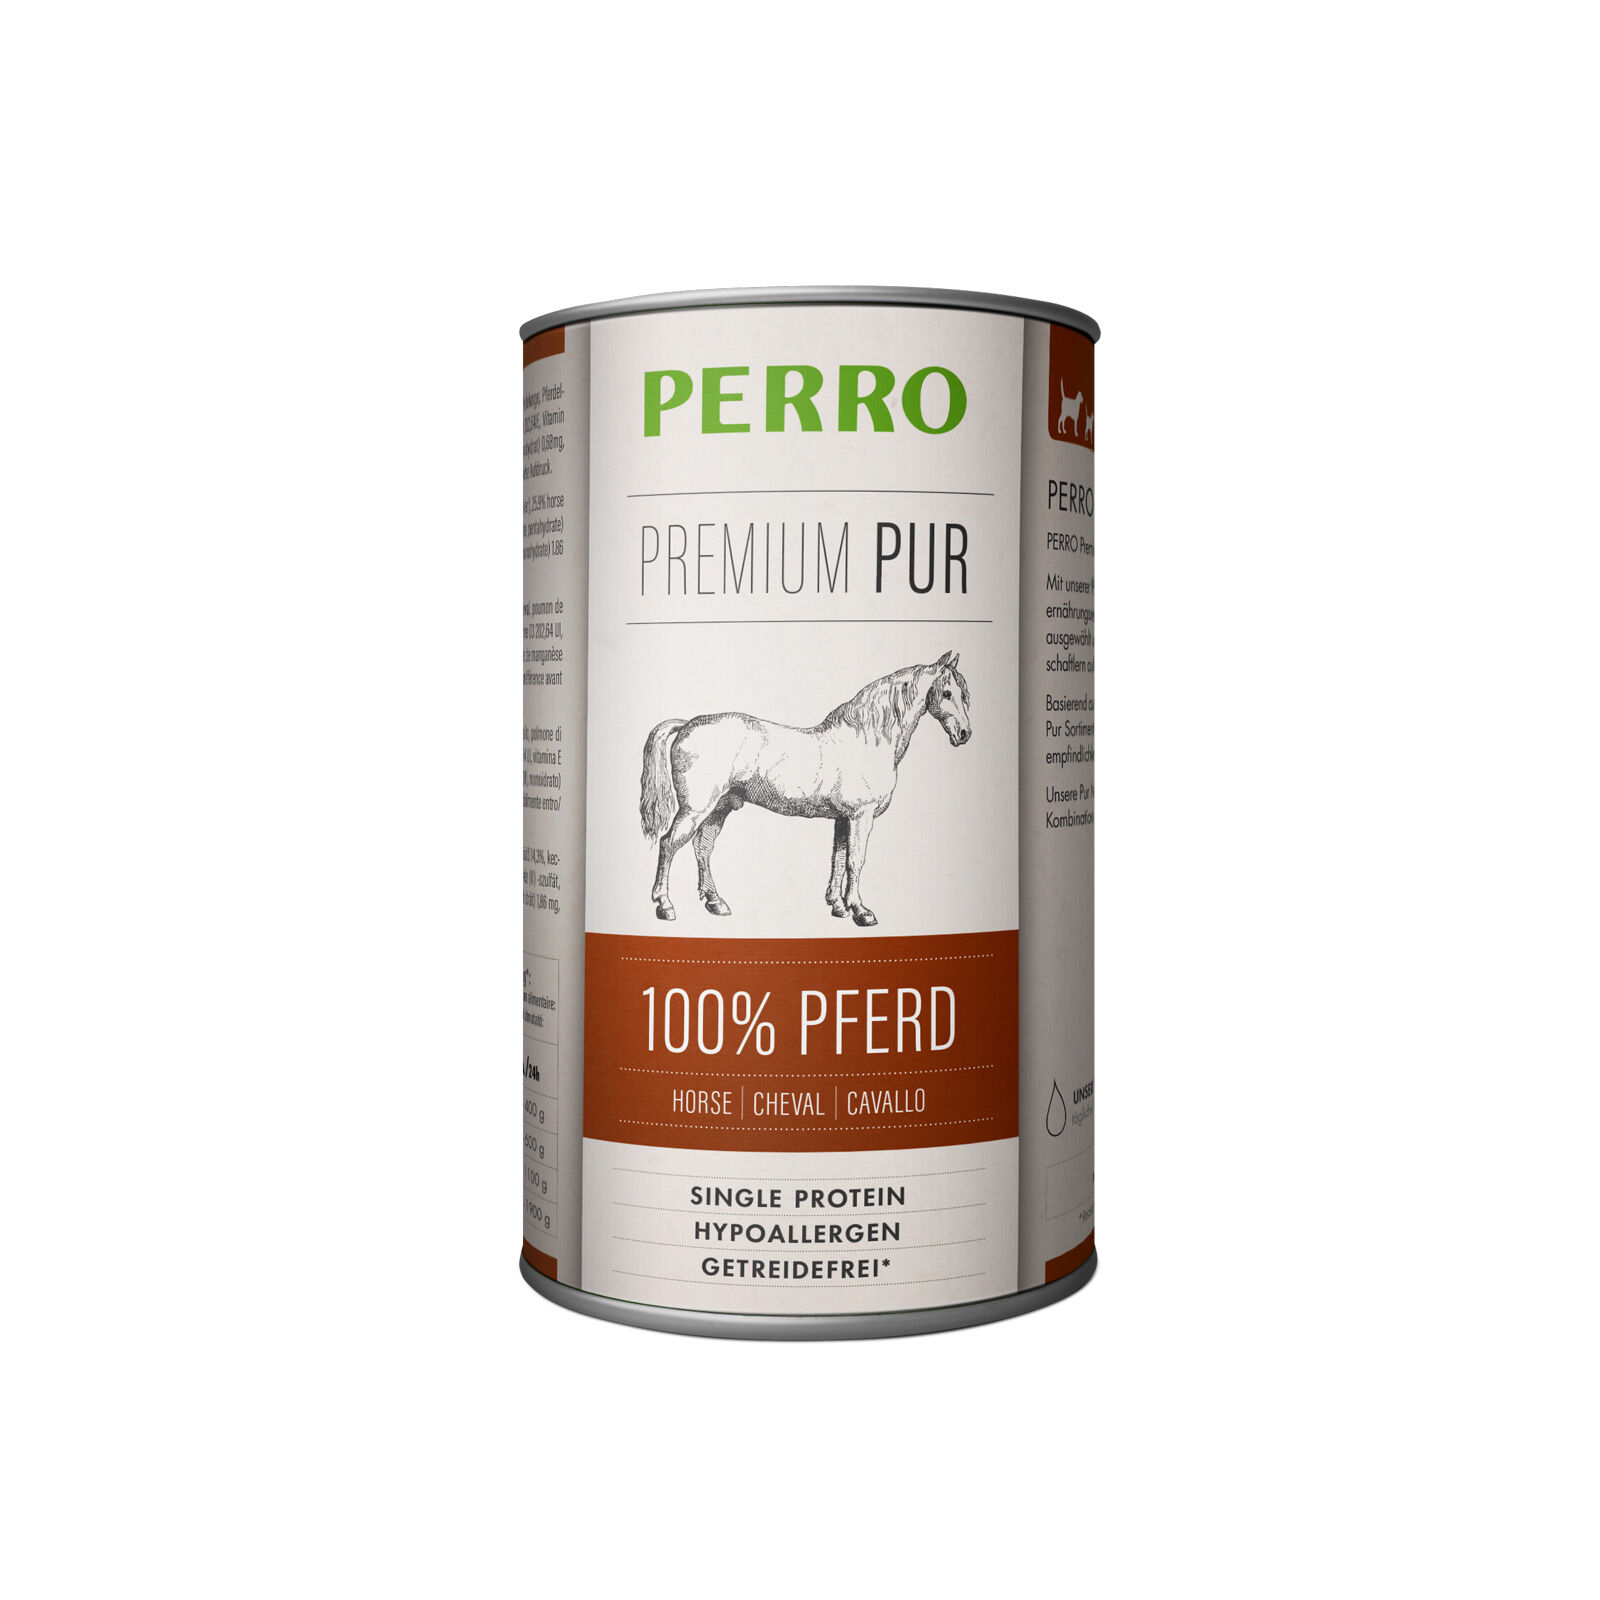 PERRO-Premium-Pur-Pferd-410g-Hund-Nassfutter-181202